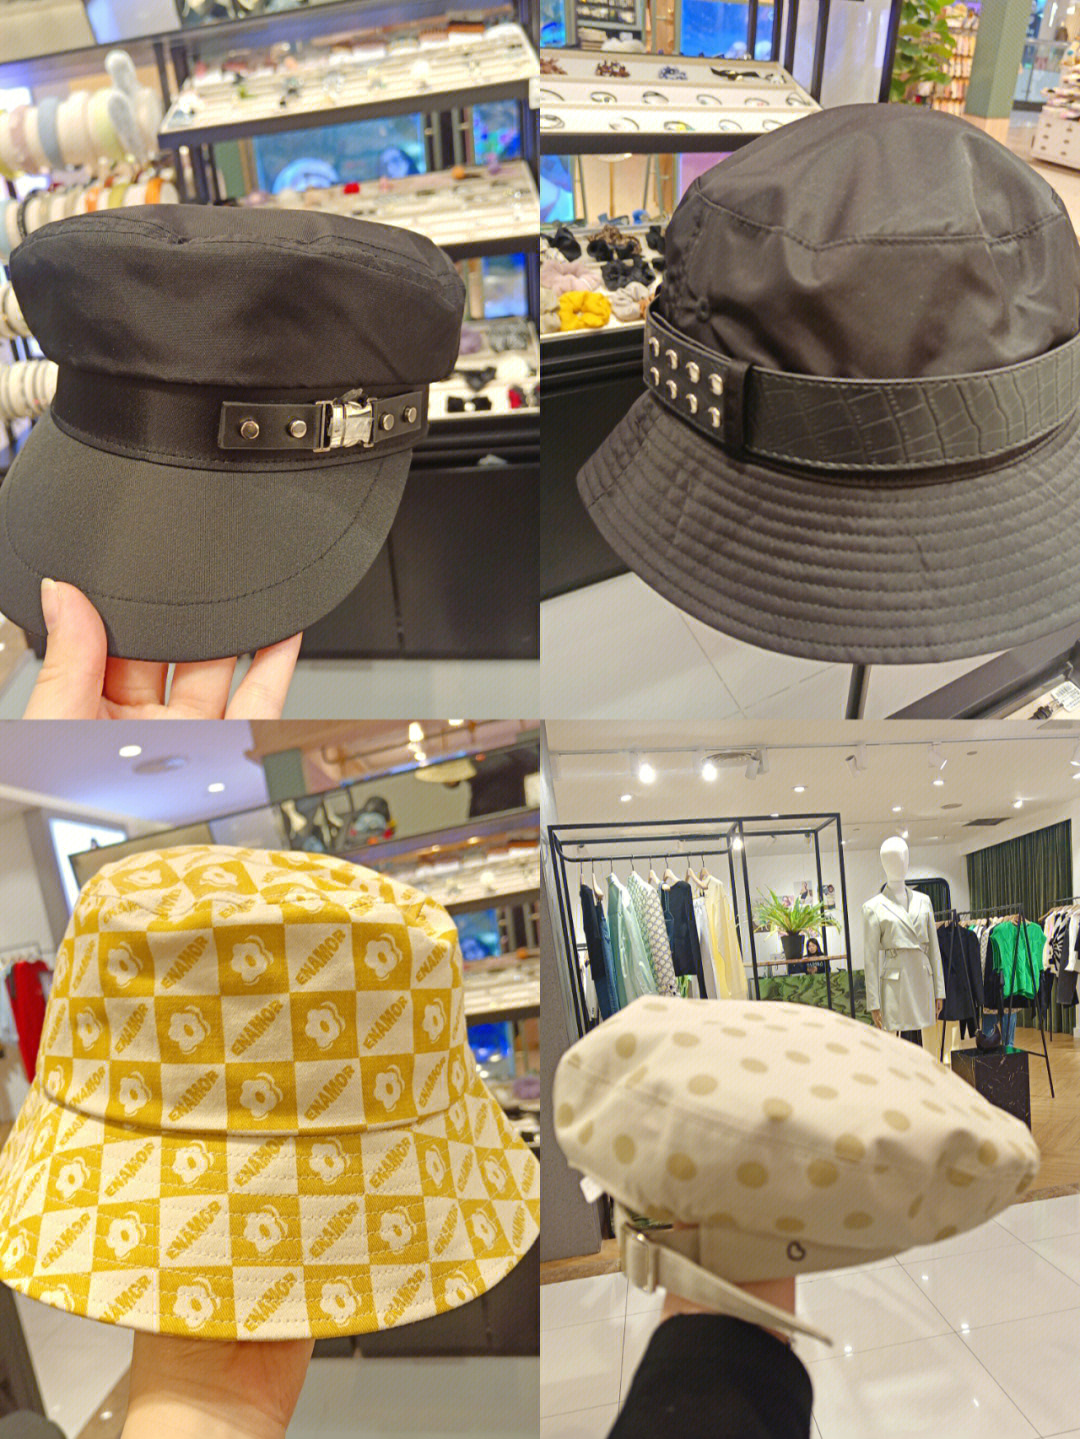 阿吉豆的帽子新款  趁着活动还不赶紧来,都是新款帽子哦,尽显青春